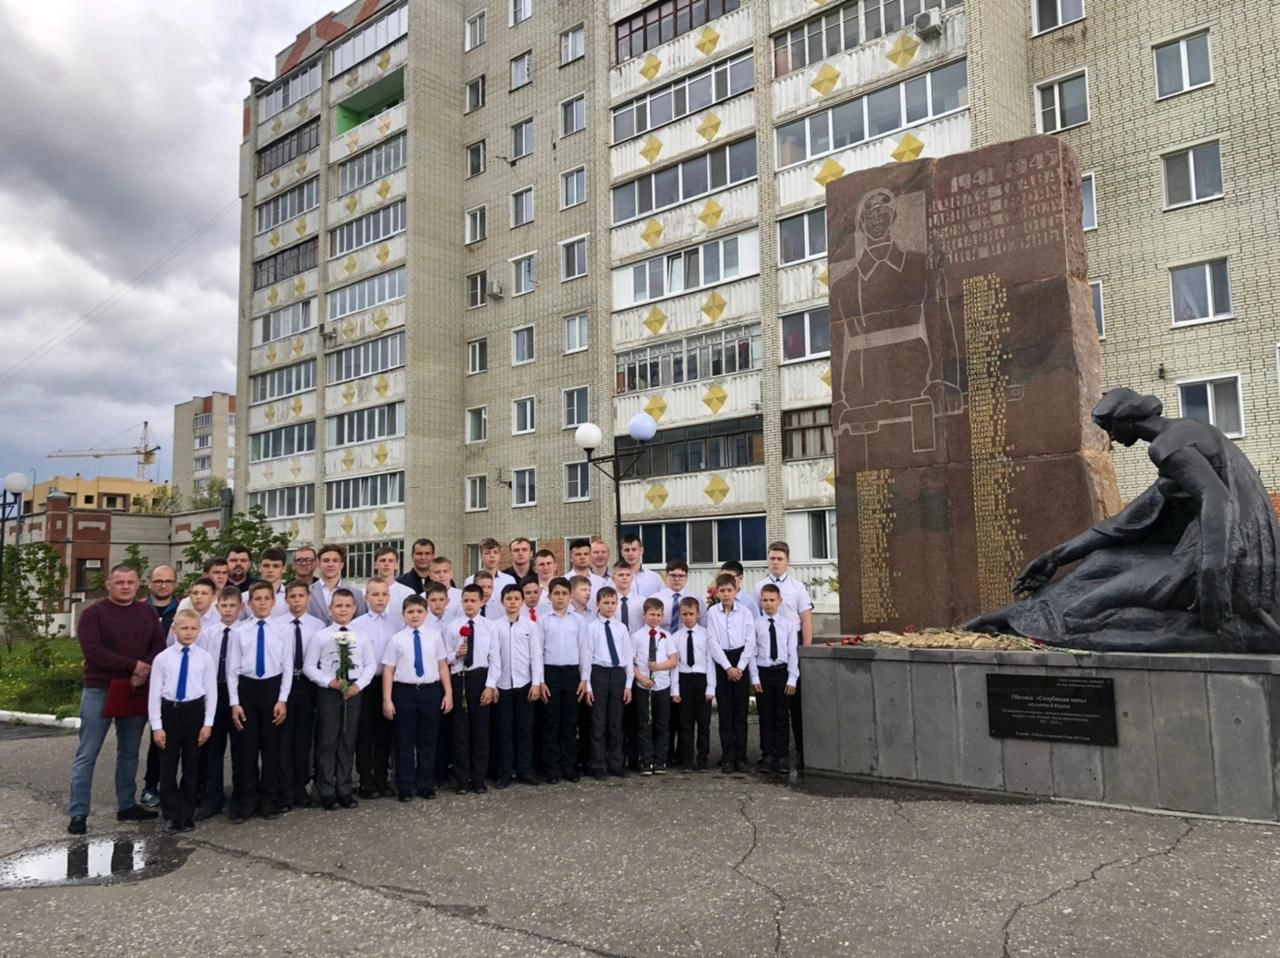 В Кузнецке прошло традиционное посвящение в борцы юных спортсменов